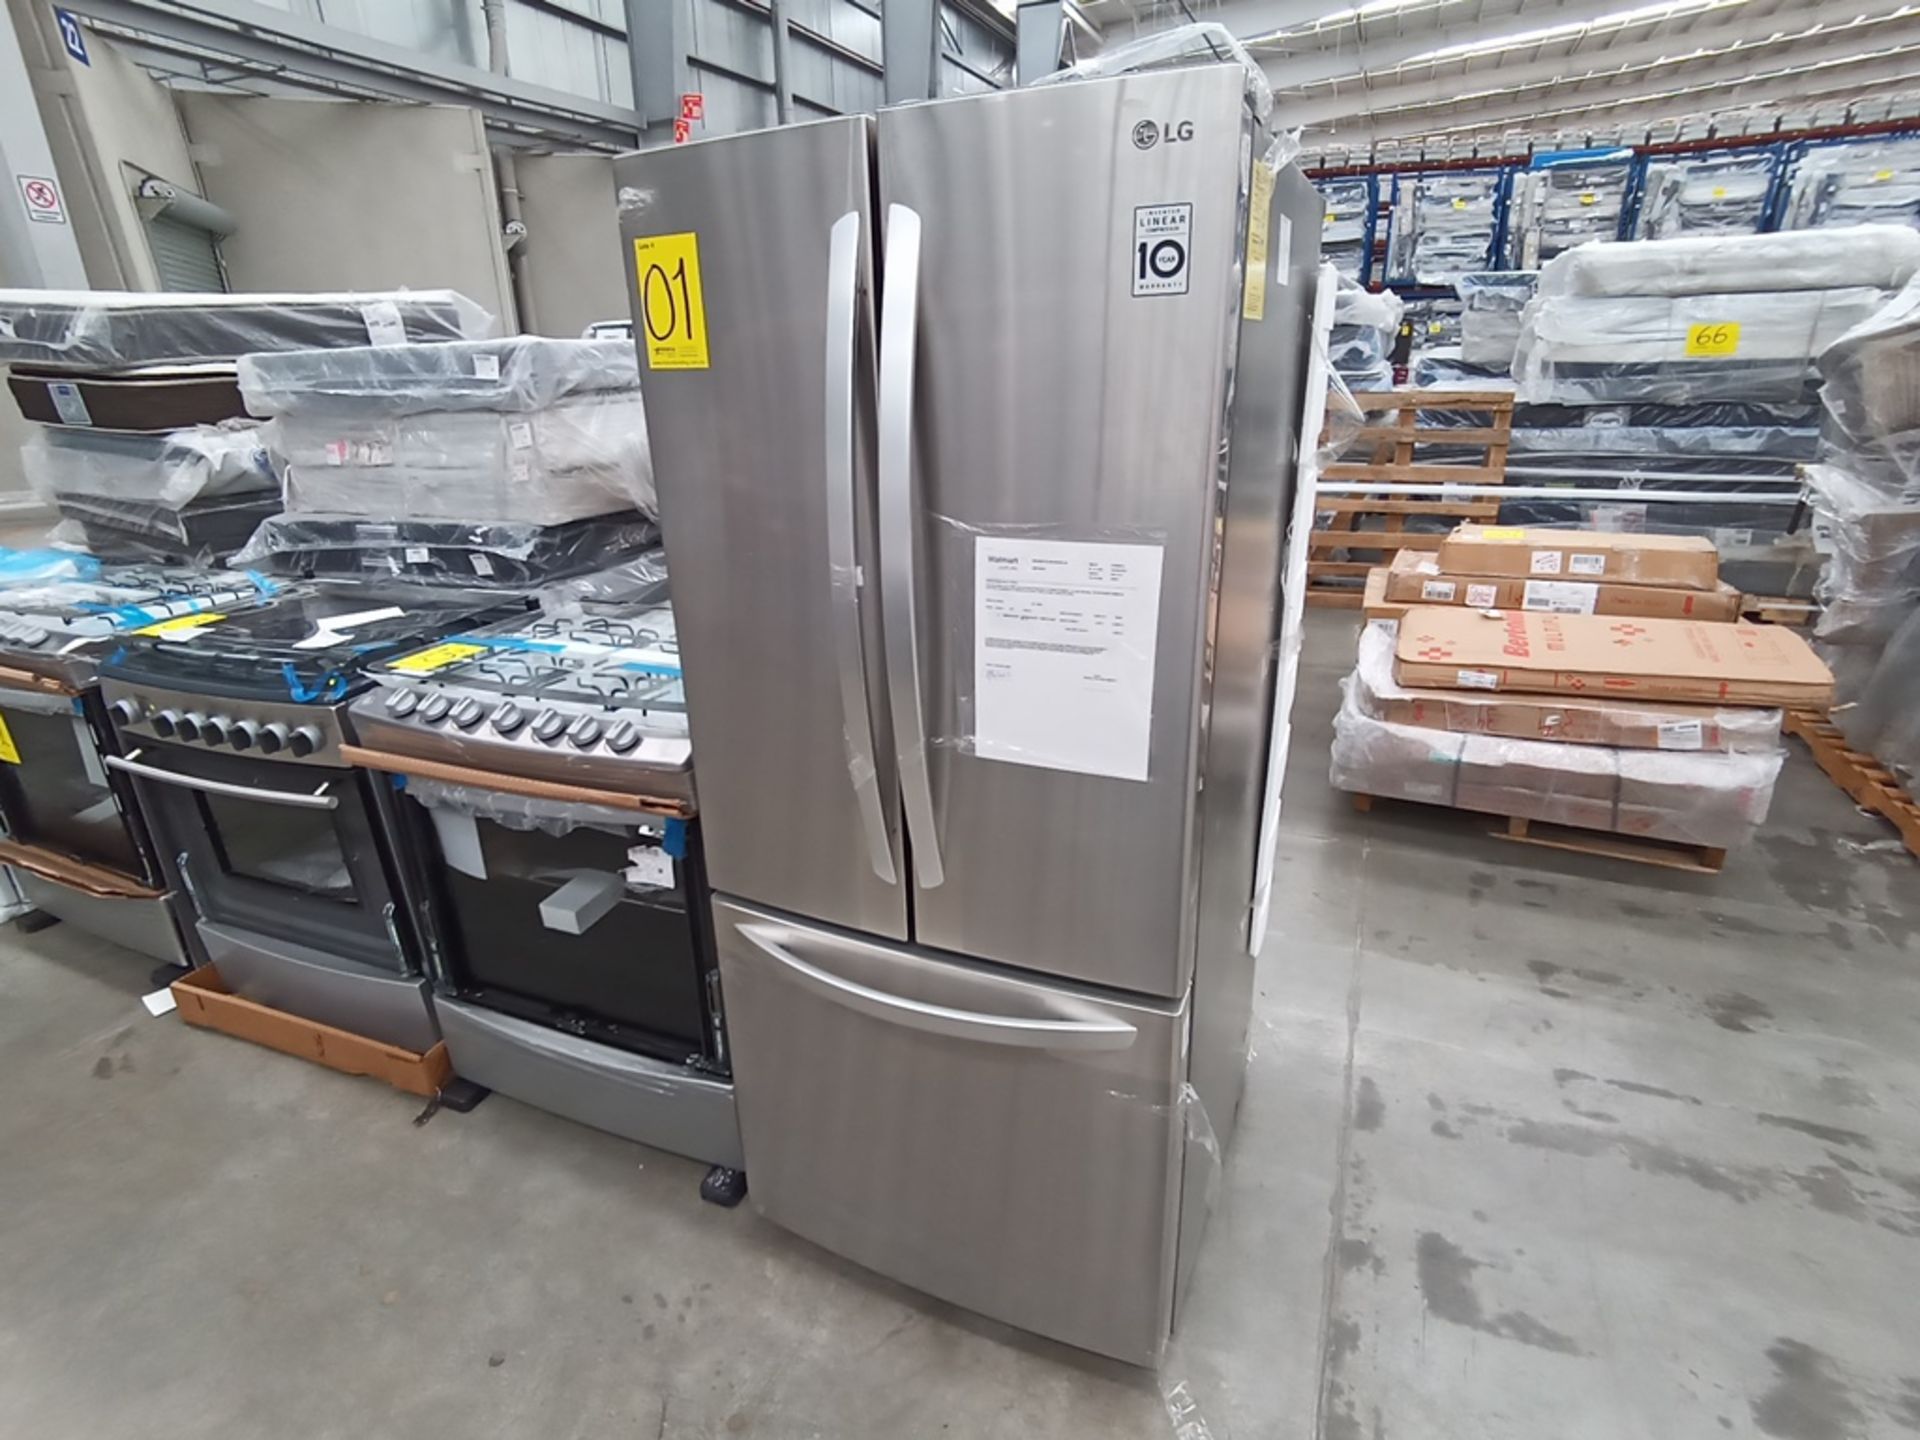 1 Refrigerador con dispensador de agua, Marca LG, Modelo GF22BGSK, Serie 112MRYA05834, Color Gris.